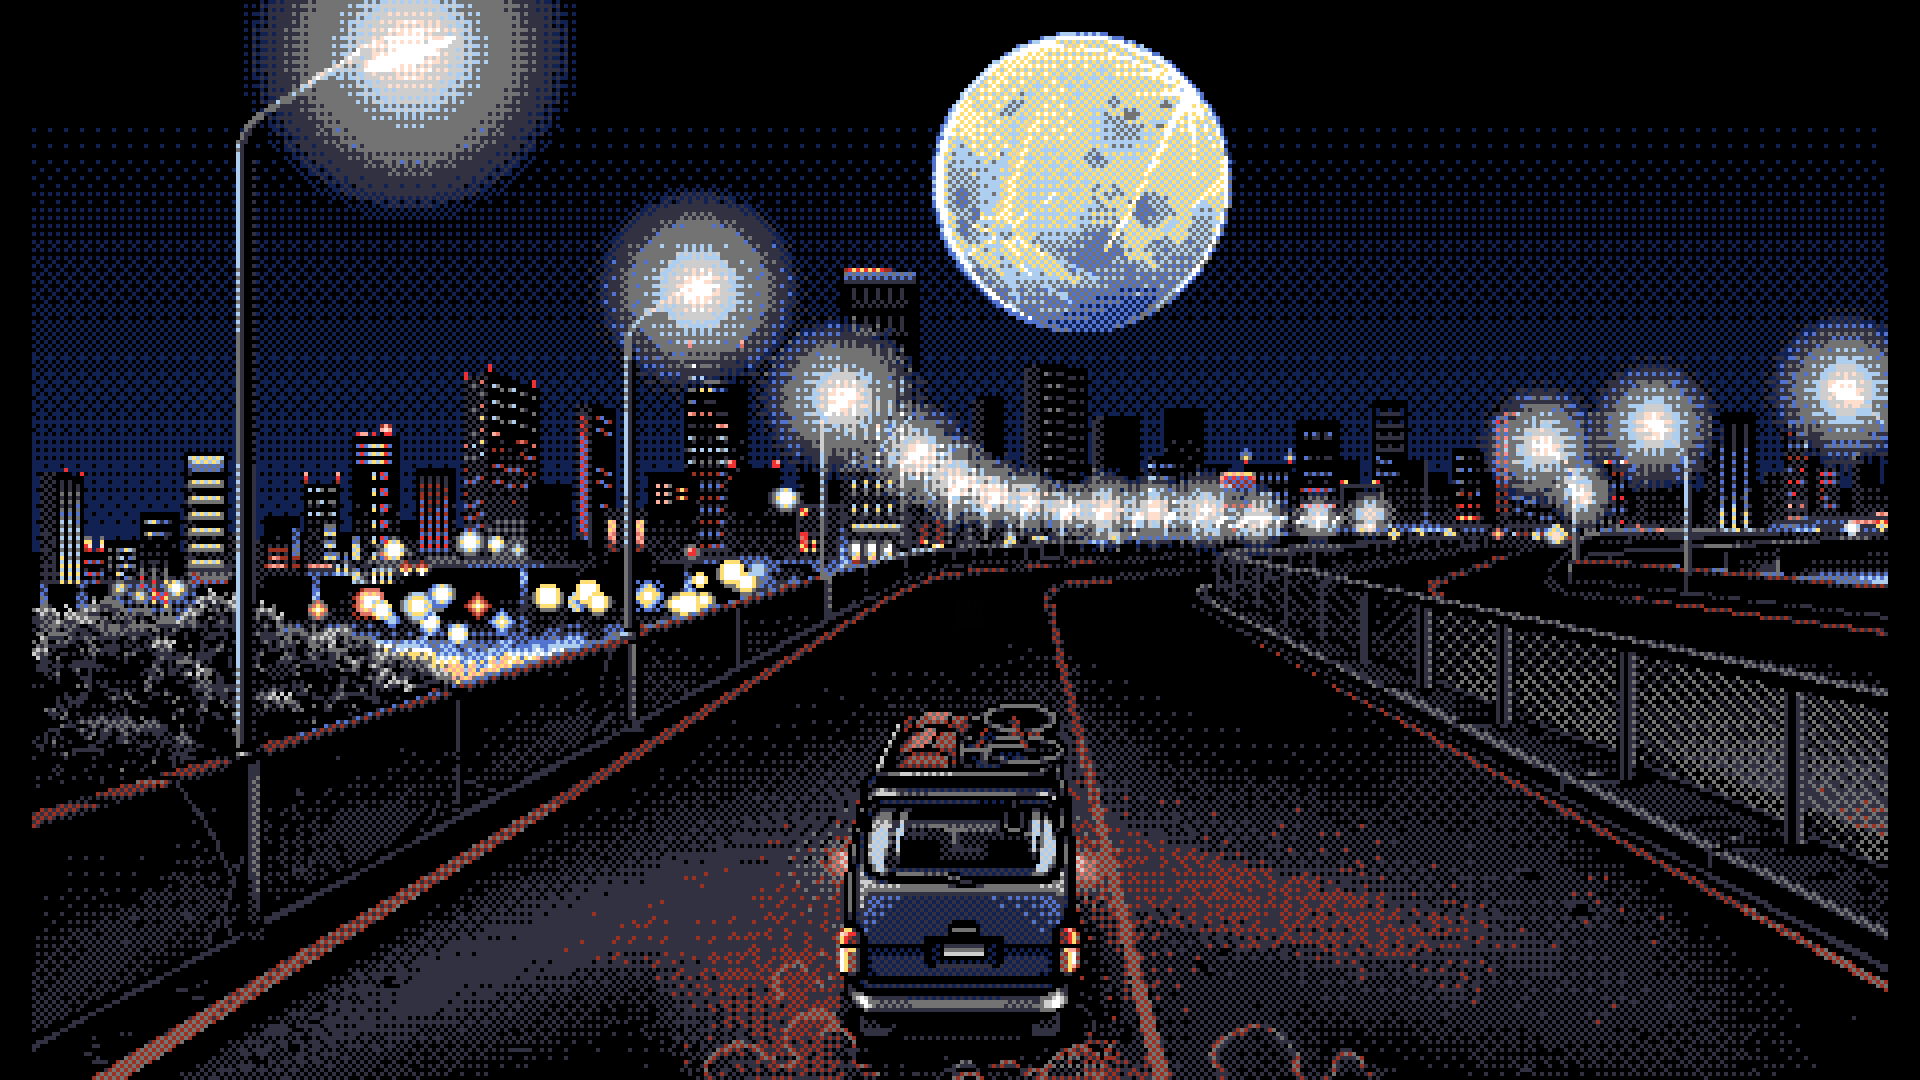 PC 98 Pixel Art Dark Background Cityscape Vehicle Road Digital Art Waku Waku Mahjong Panic 2 Night S 1920x1080